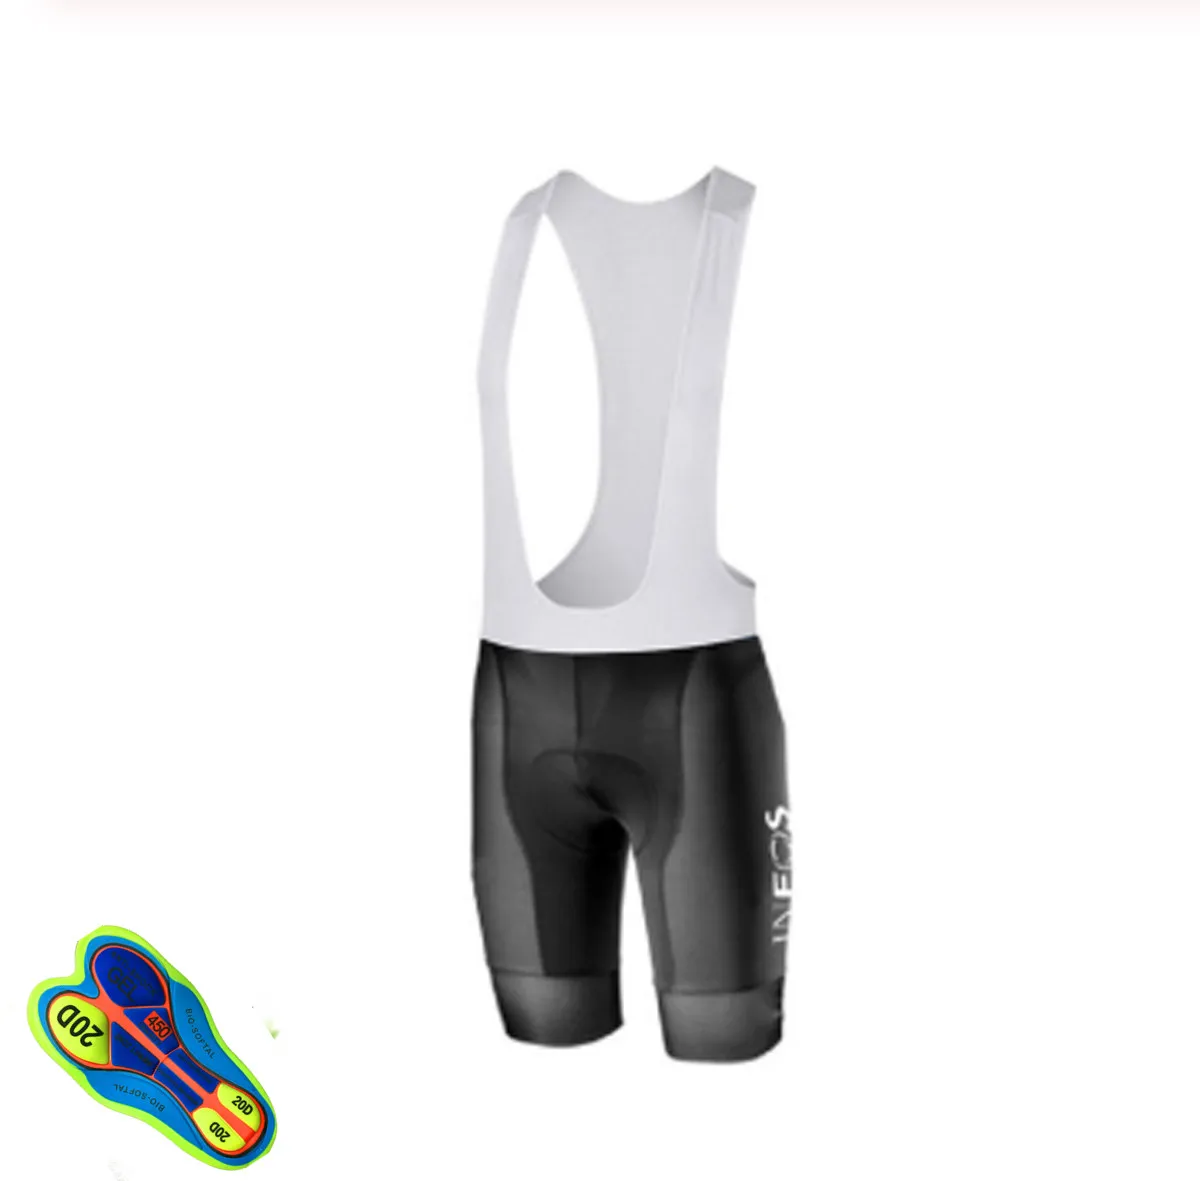 INEOS одежда для команды велосипедистов 20D pad шорты трикотажный комплект для велоспорта Ropa Ciclismo быстросохнущие Мужские pro велосипедный майон Culotte - Цвет: Short pants 2